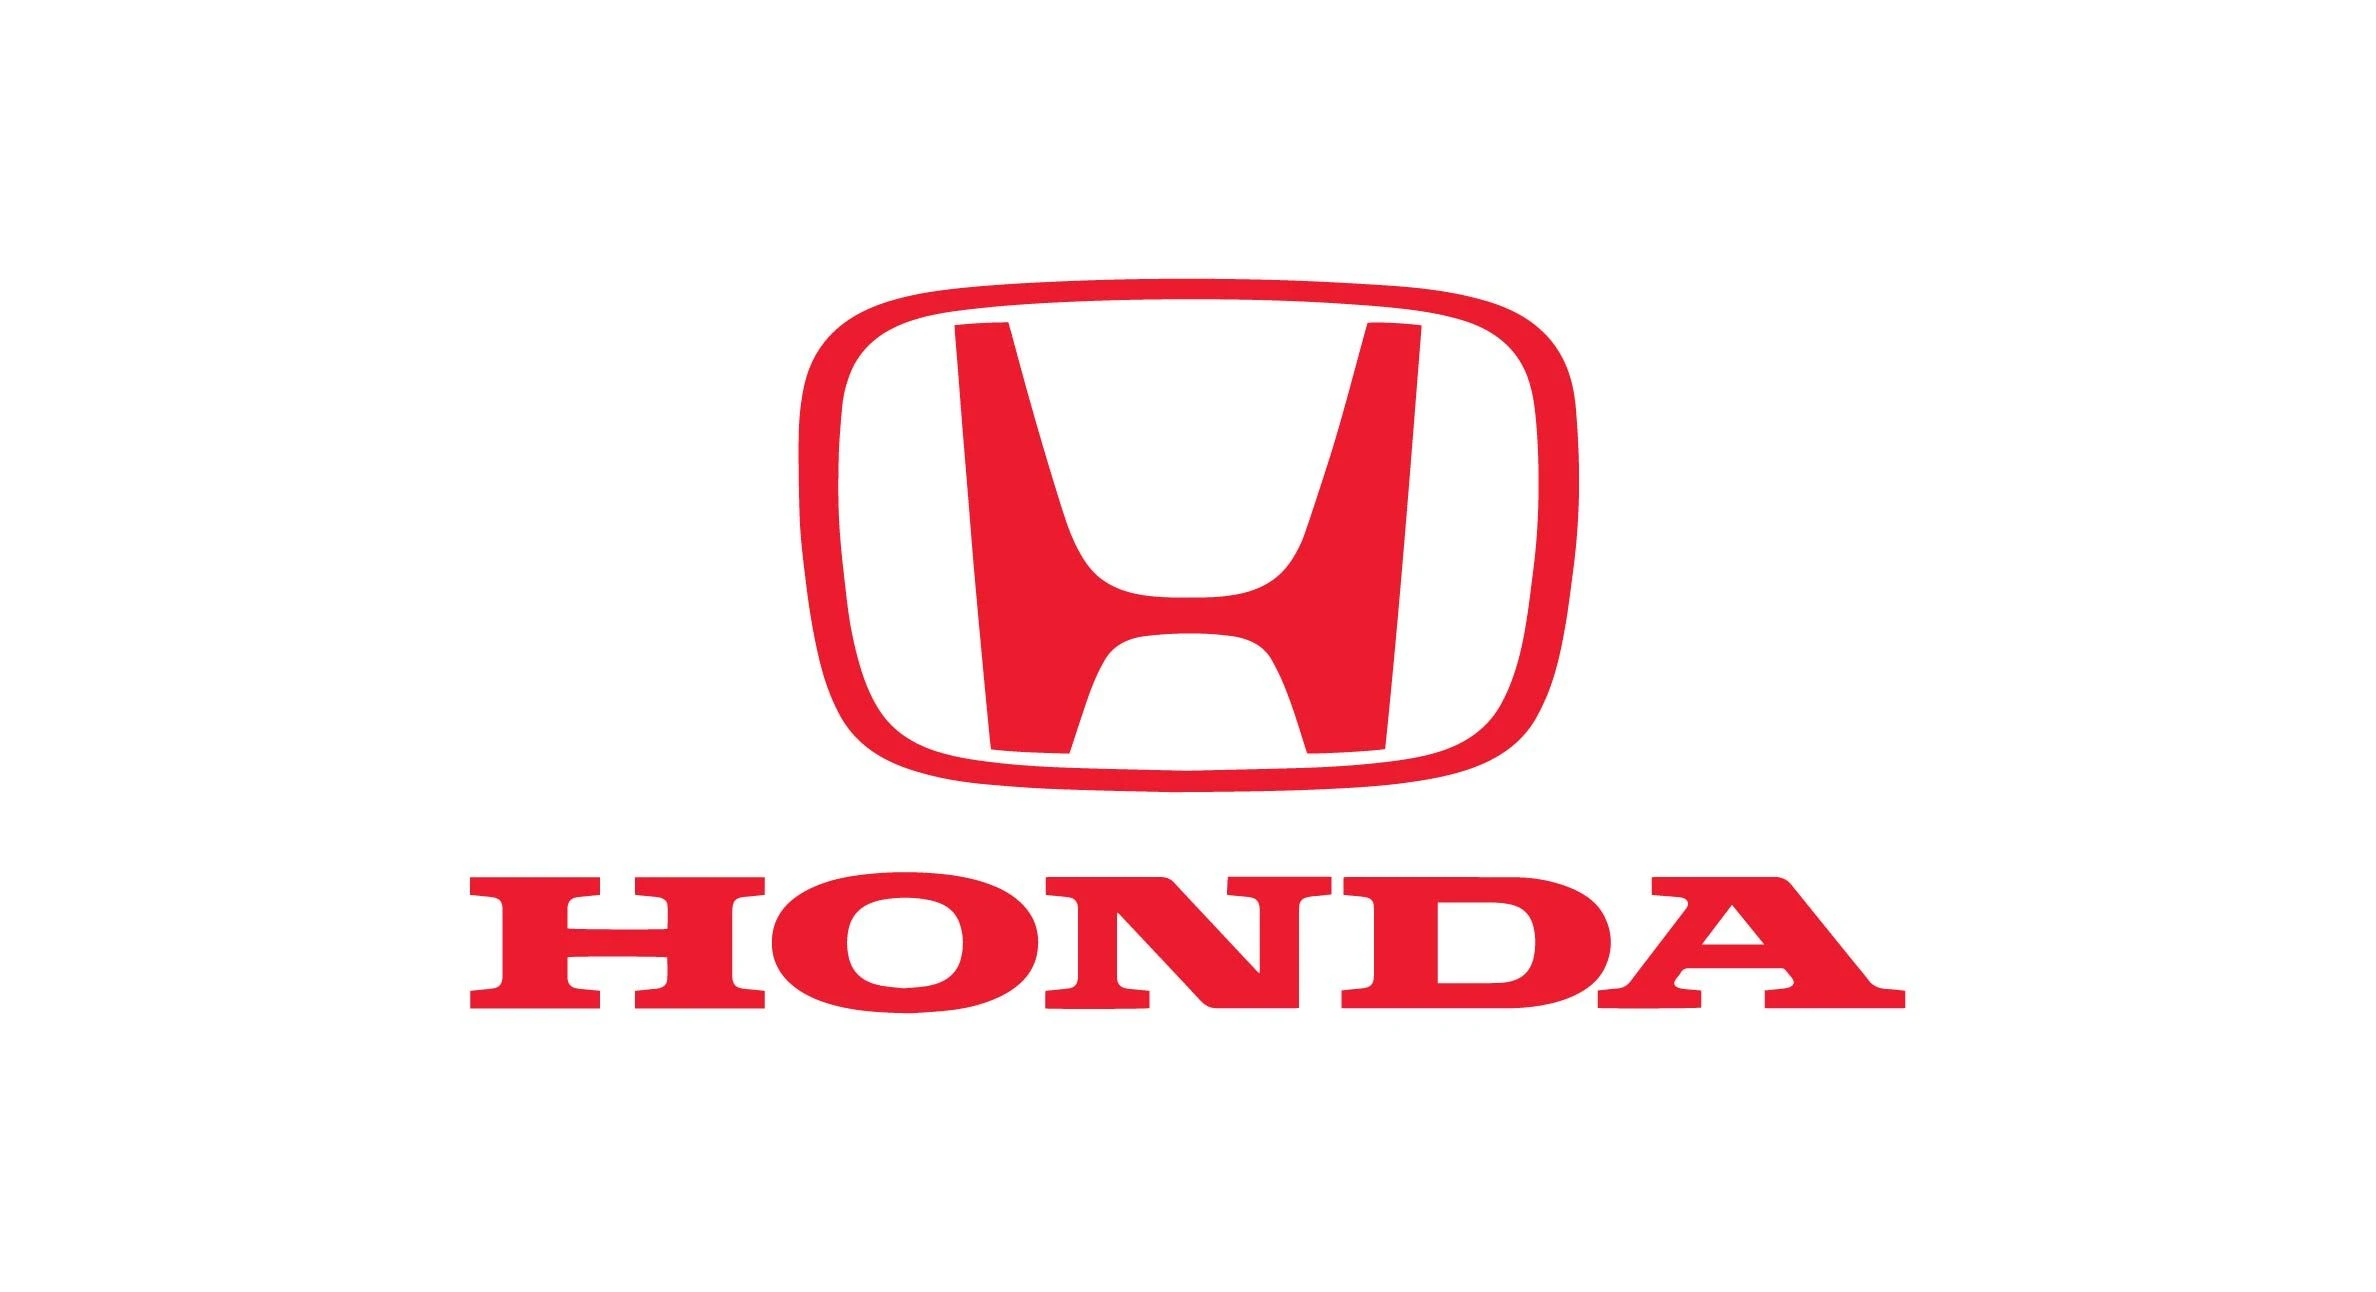 Honda car brand logo